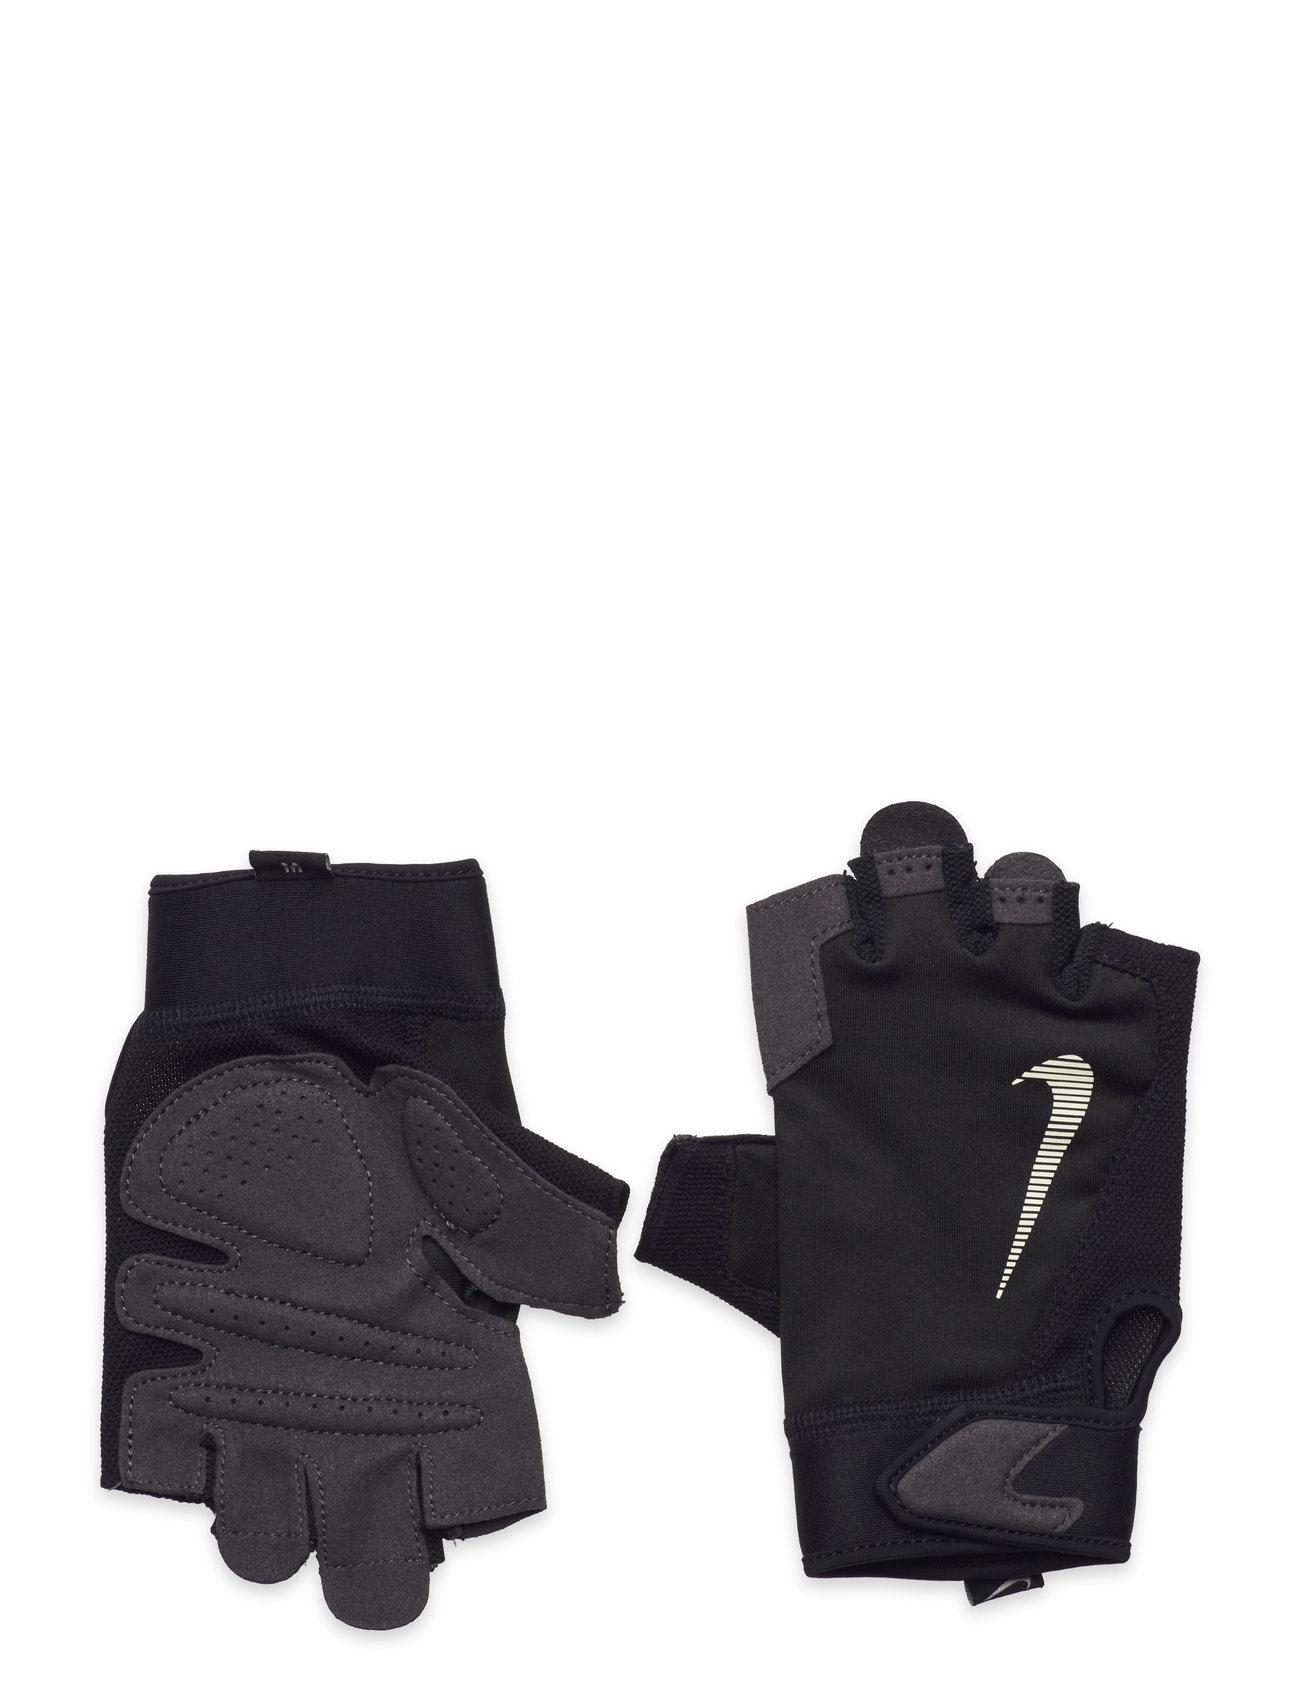 Nike Mens Ultm Fitness Gloves Sport Gloves Finger Gloves Black NIKE Equipment